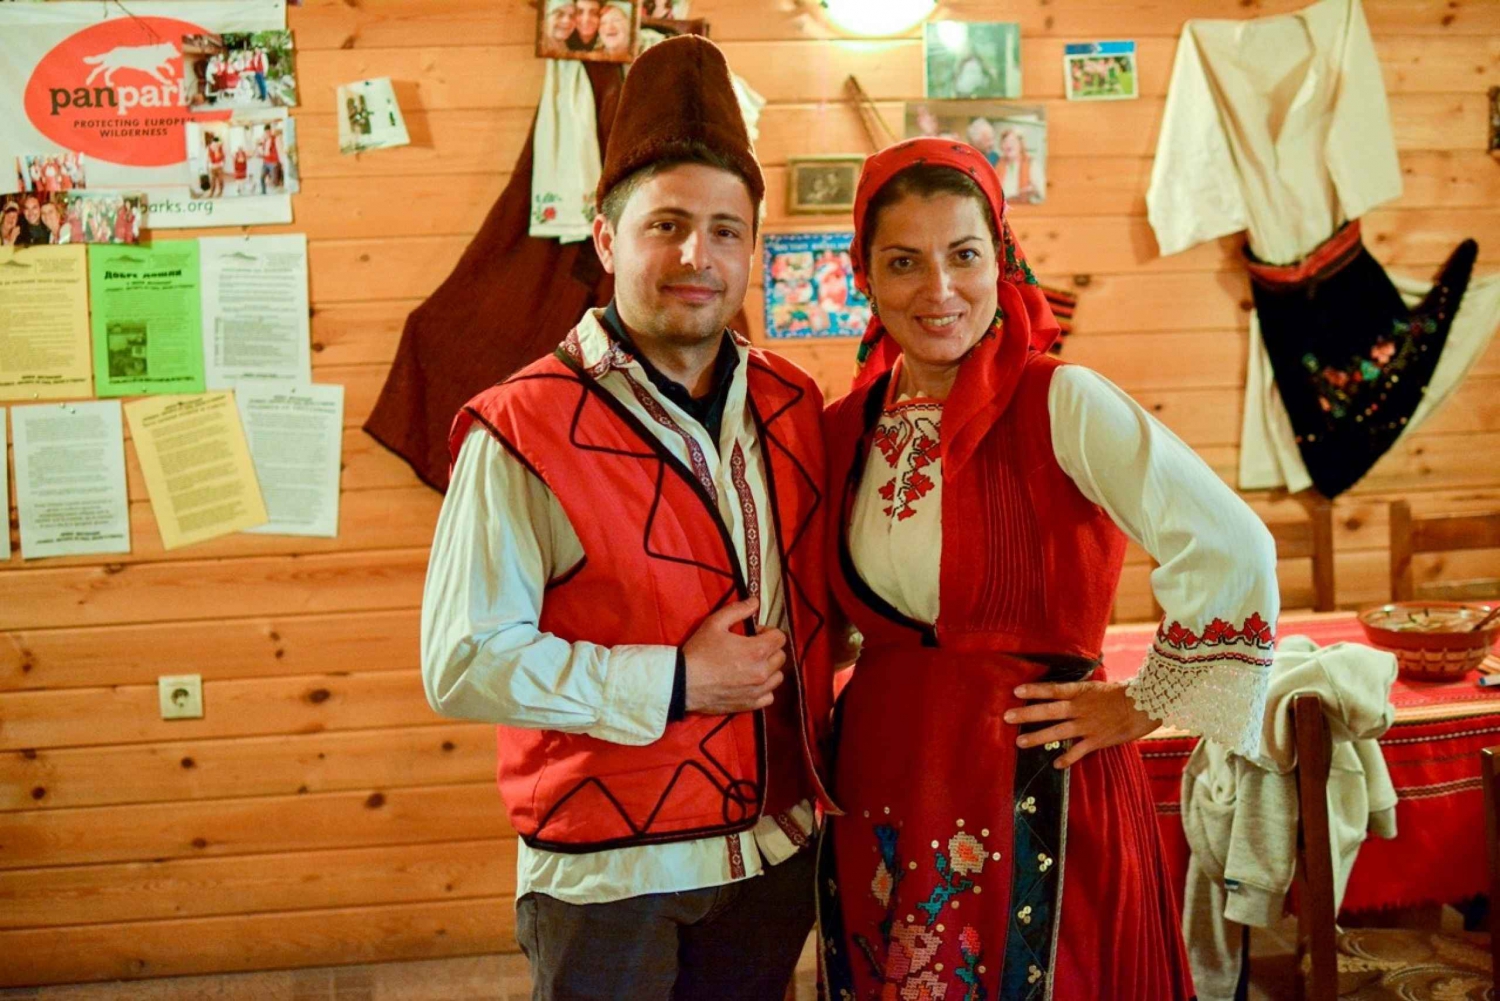 Gorno Draglishte: experiência folclórica local com degustação de comida